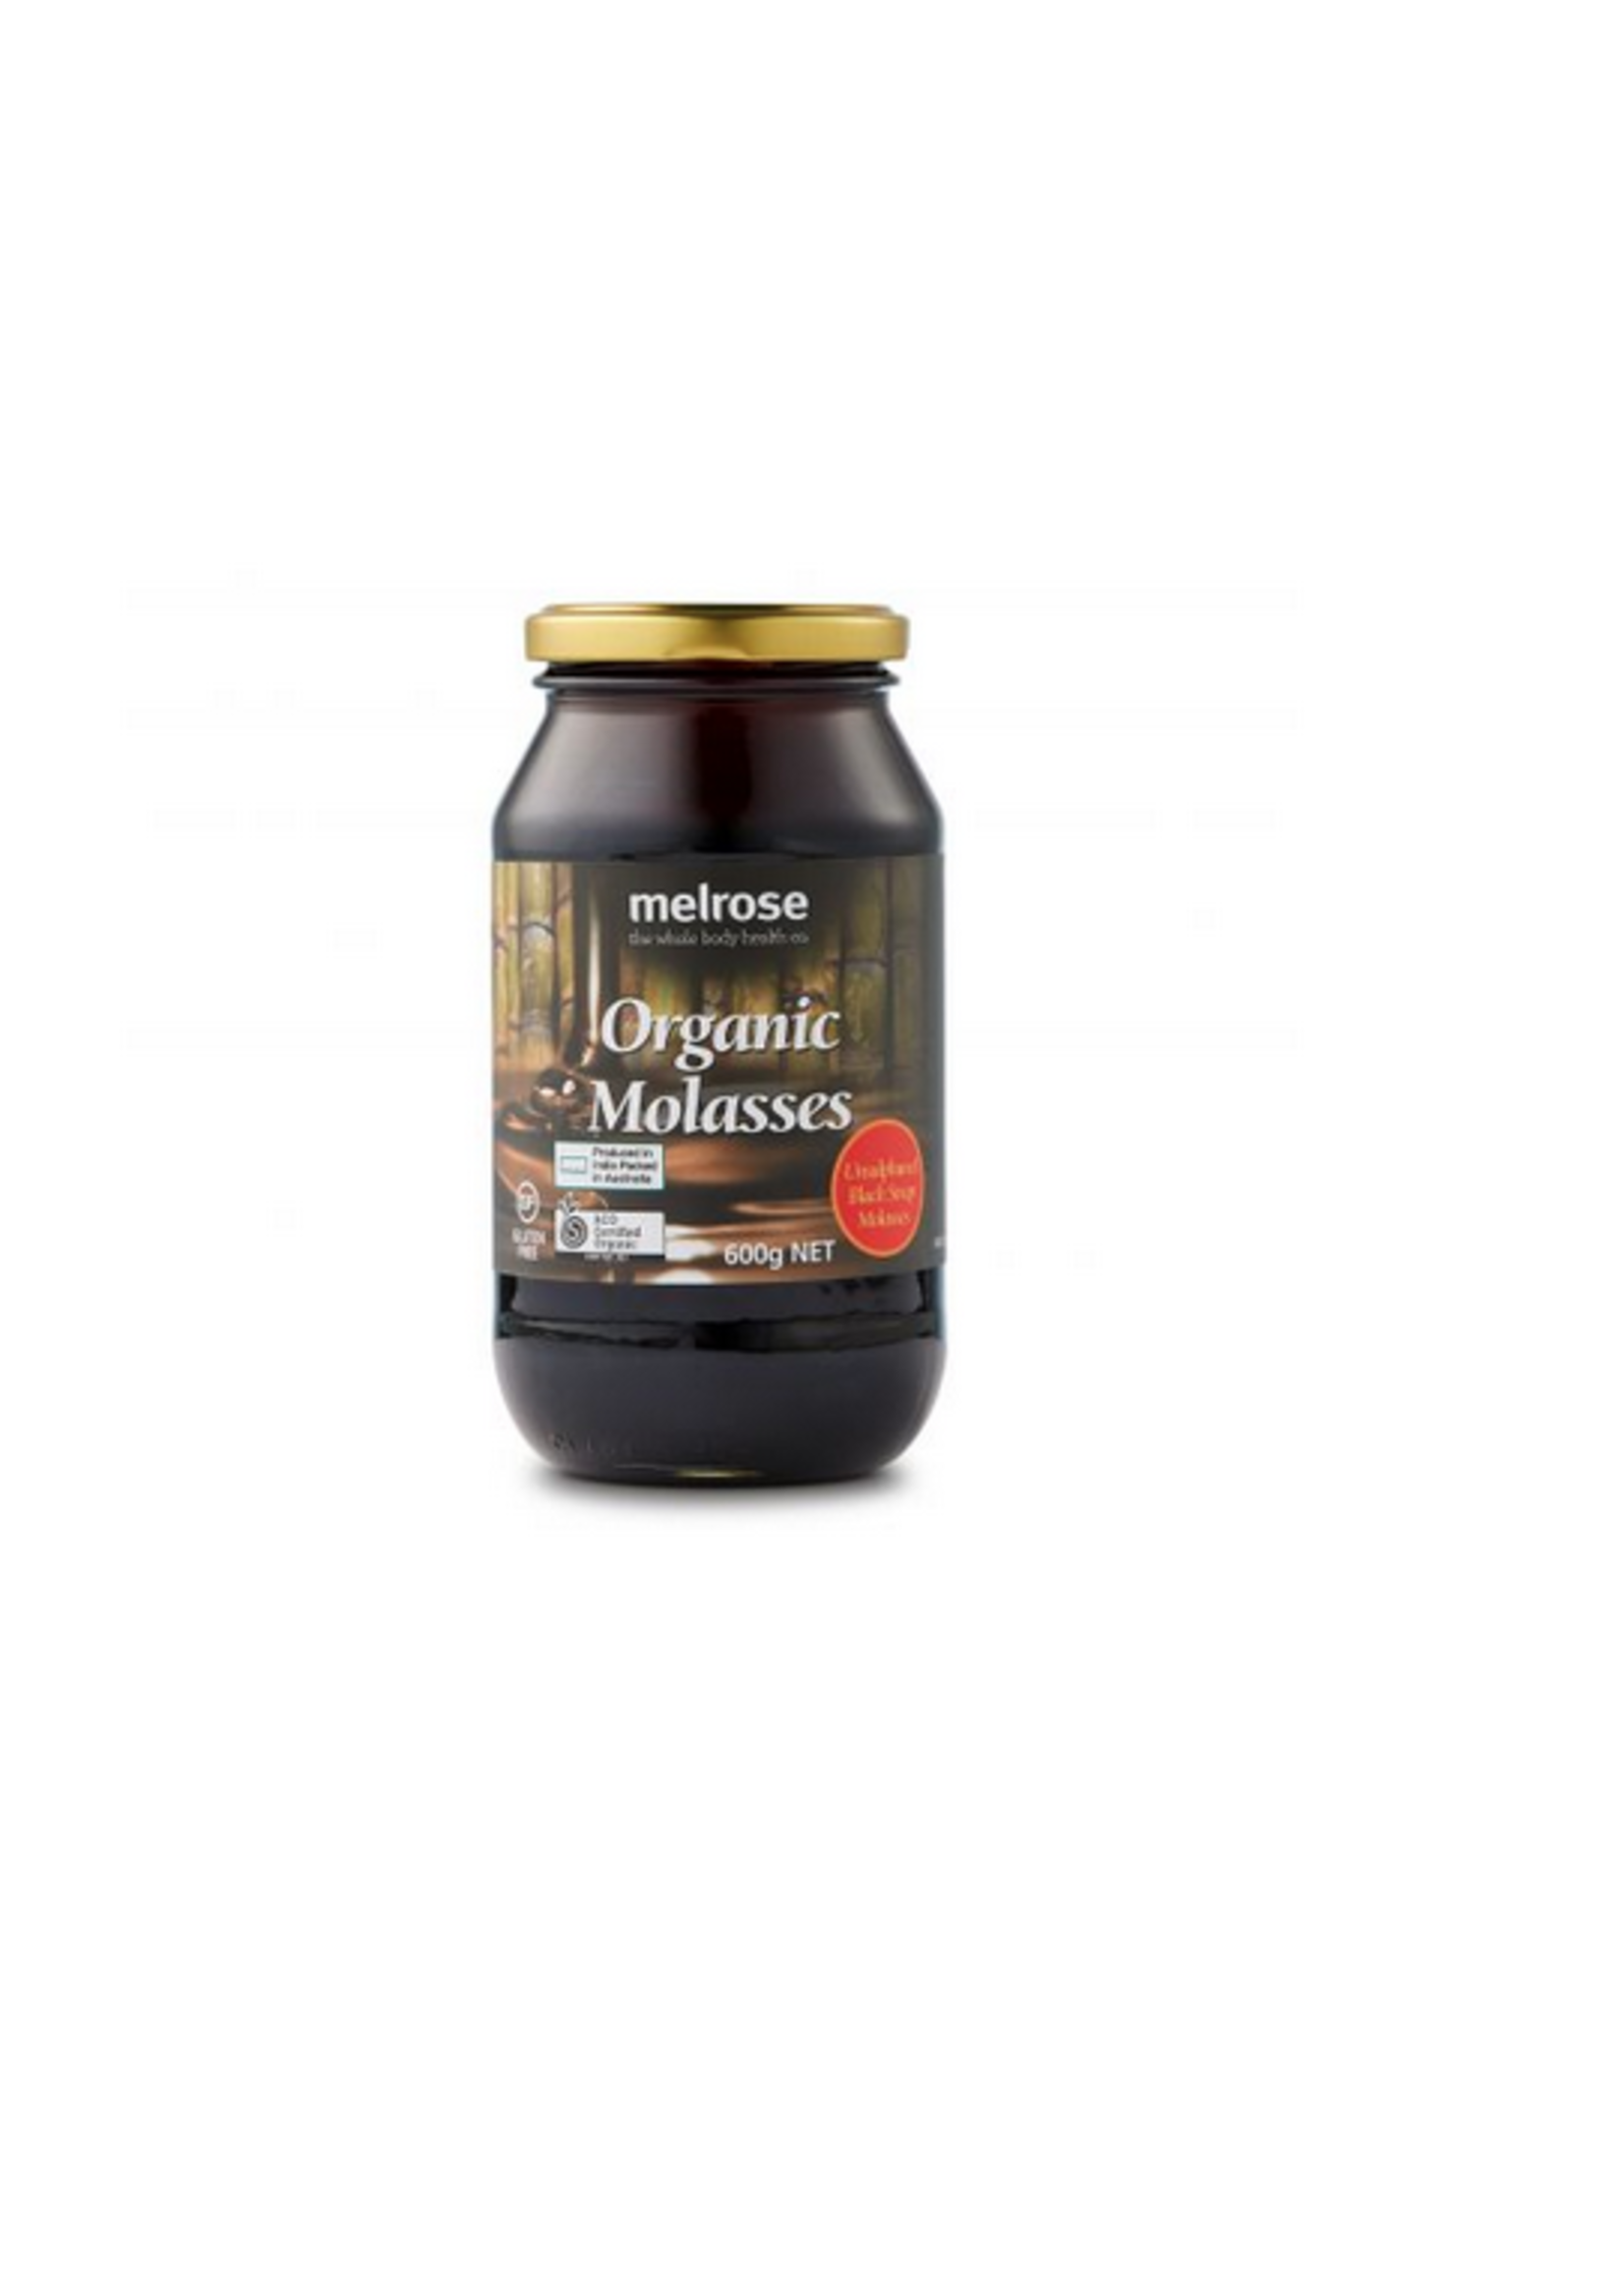 MELROSE Melrose Organic Molasses 600g